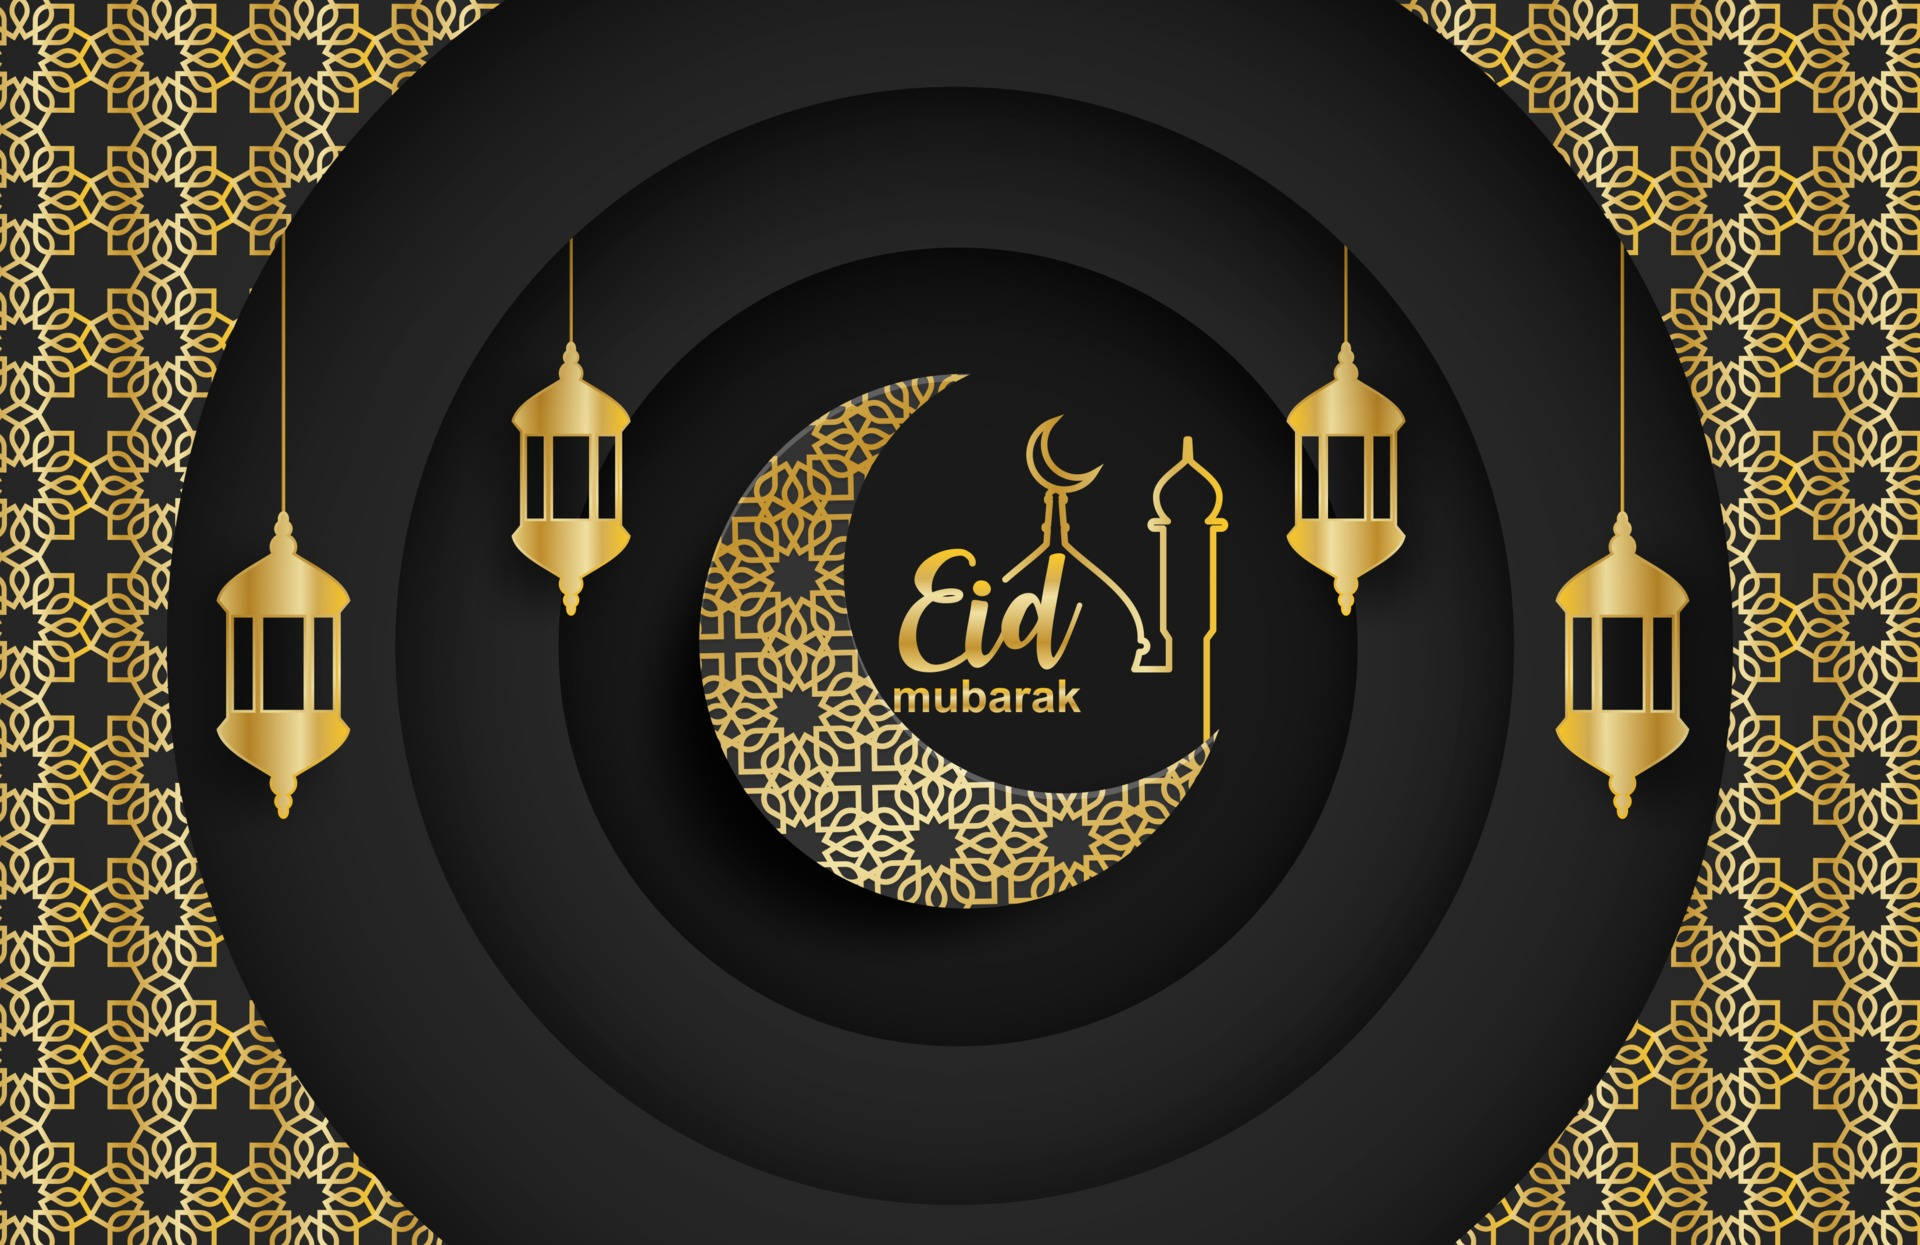 Celebrating Eid Mubarak With Joy And Harmony